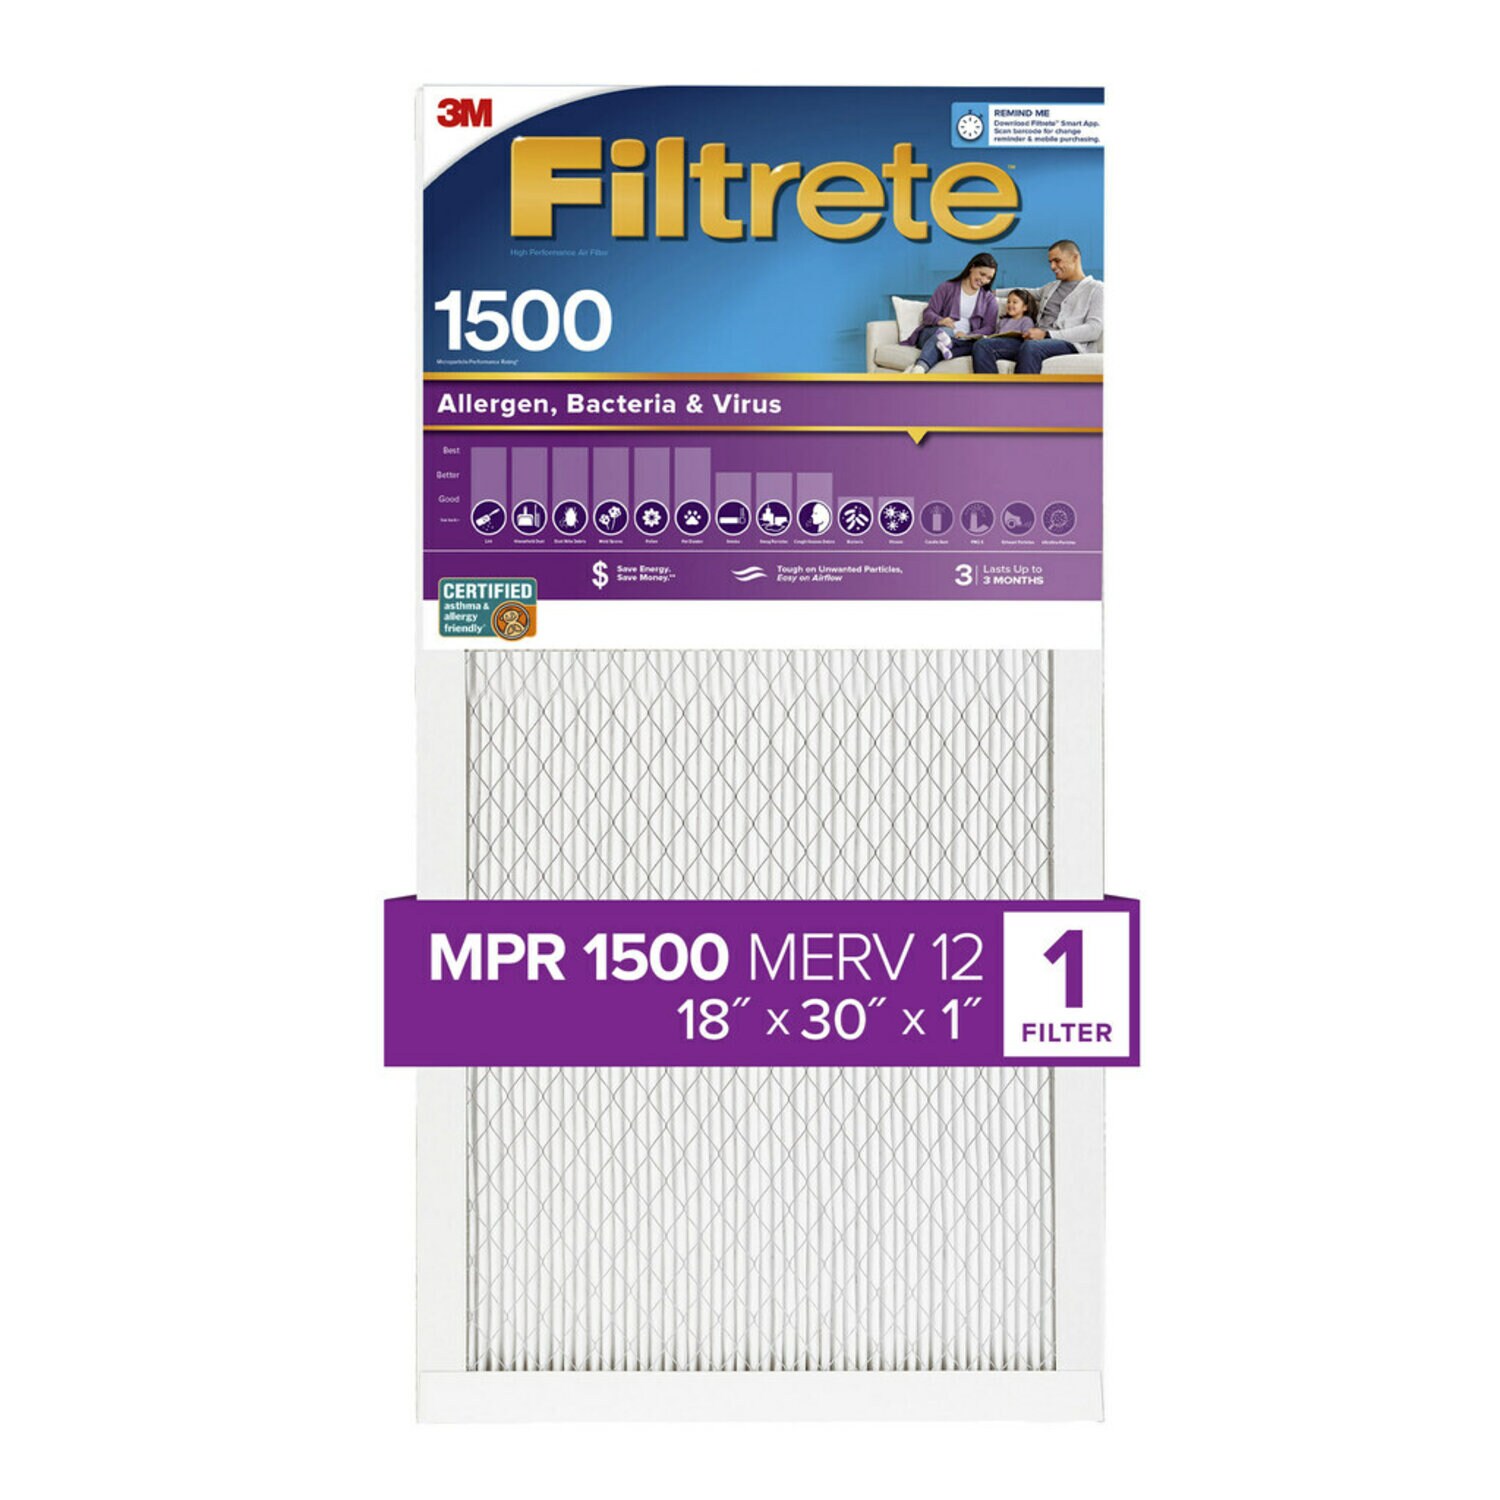 7100264692 - Filtrete High Performance Air Filter 1500 MPR 2028DC-4, 18 in x 30 in x 1 in (45.7 cm x 76.2 cm x 2.5 cm)